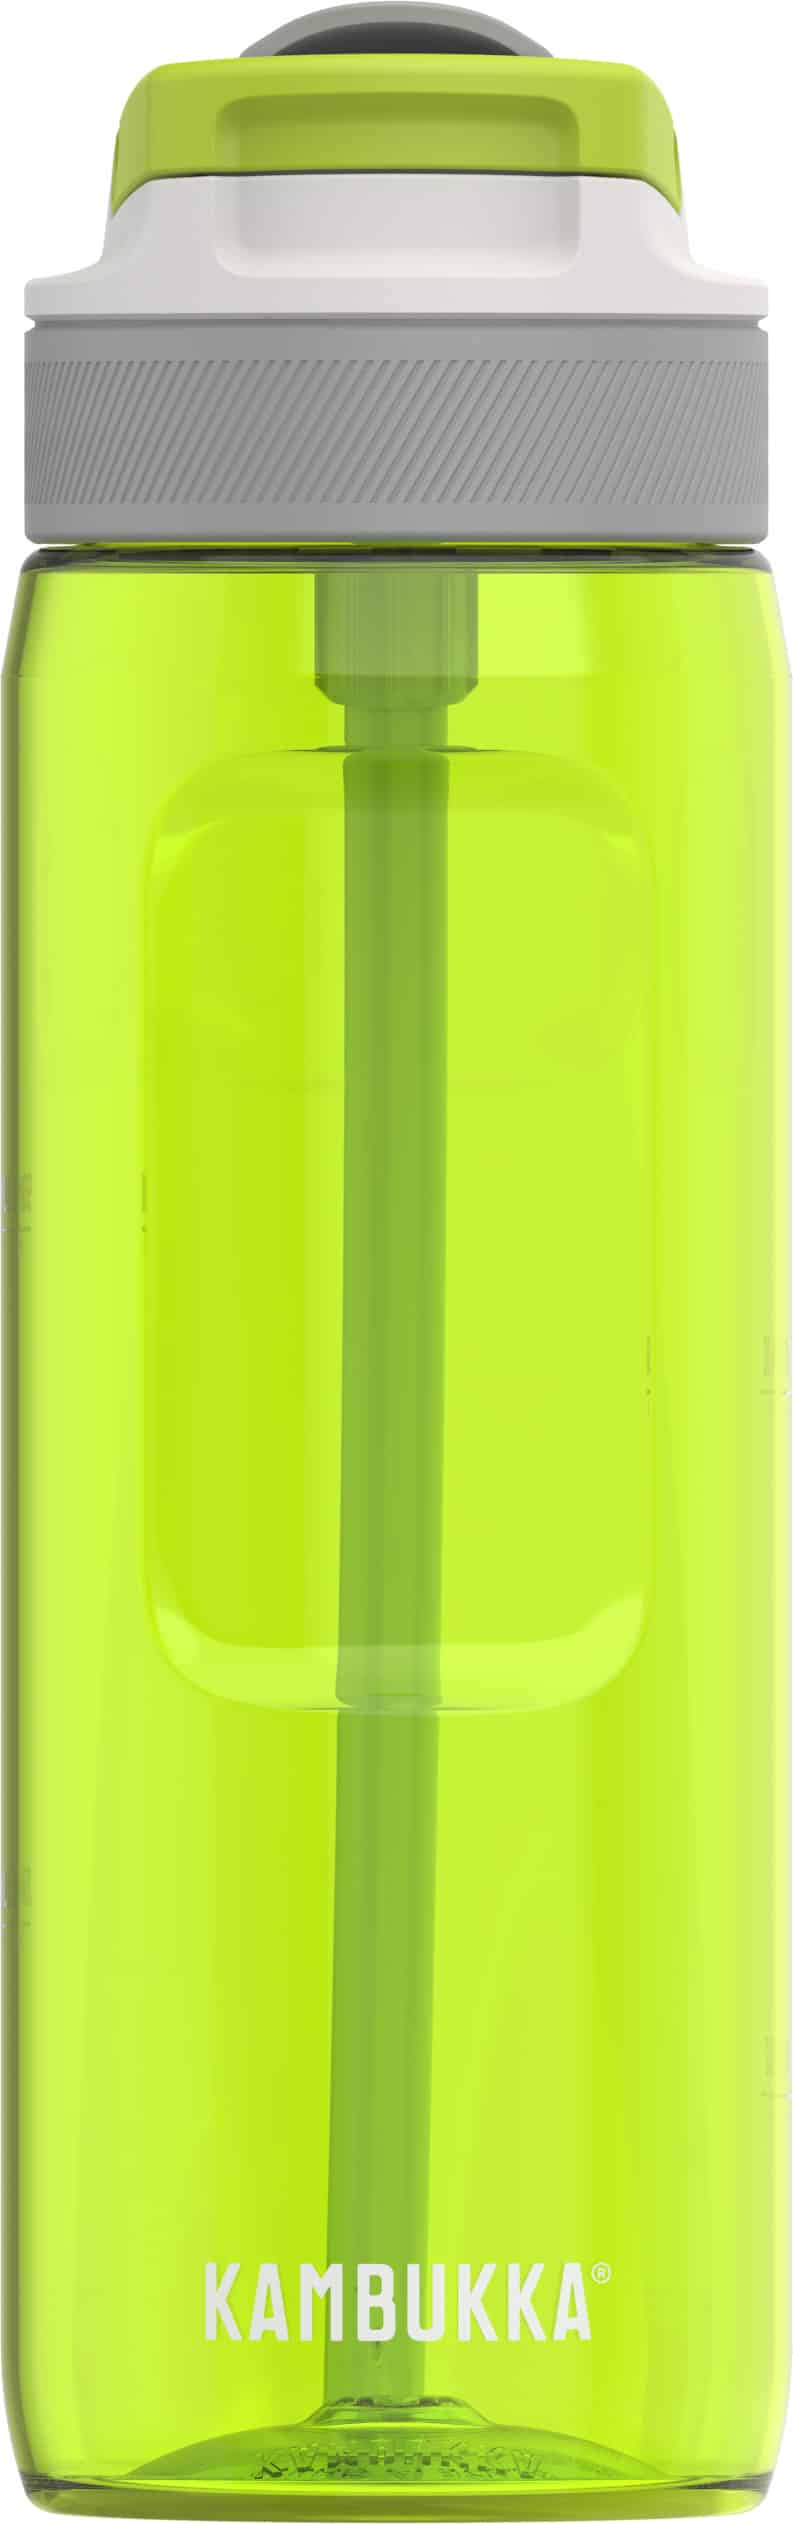 בקבוק שתיה ירוק 750 מ״ל Kambukka Lagoon Apple קמבוקה￼